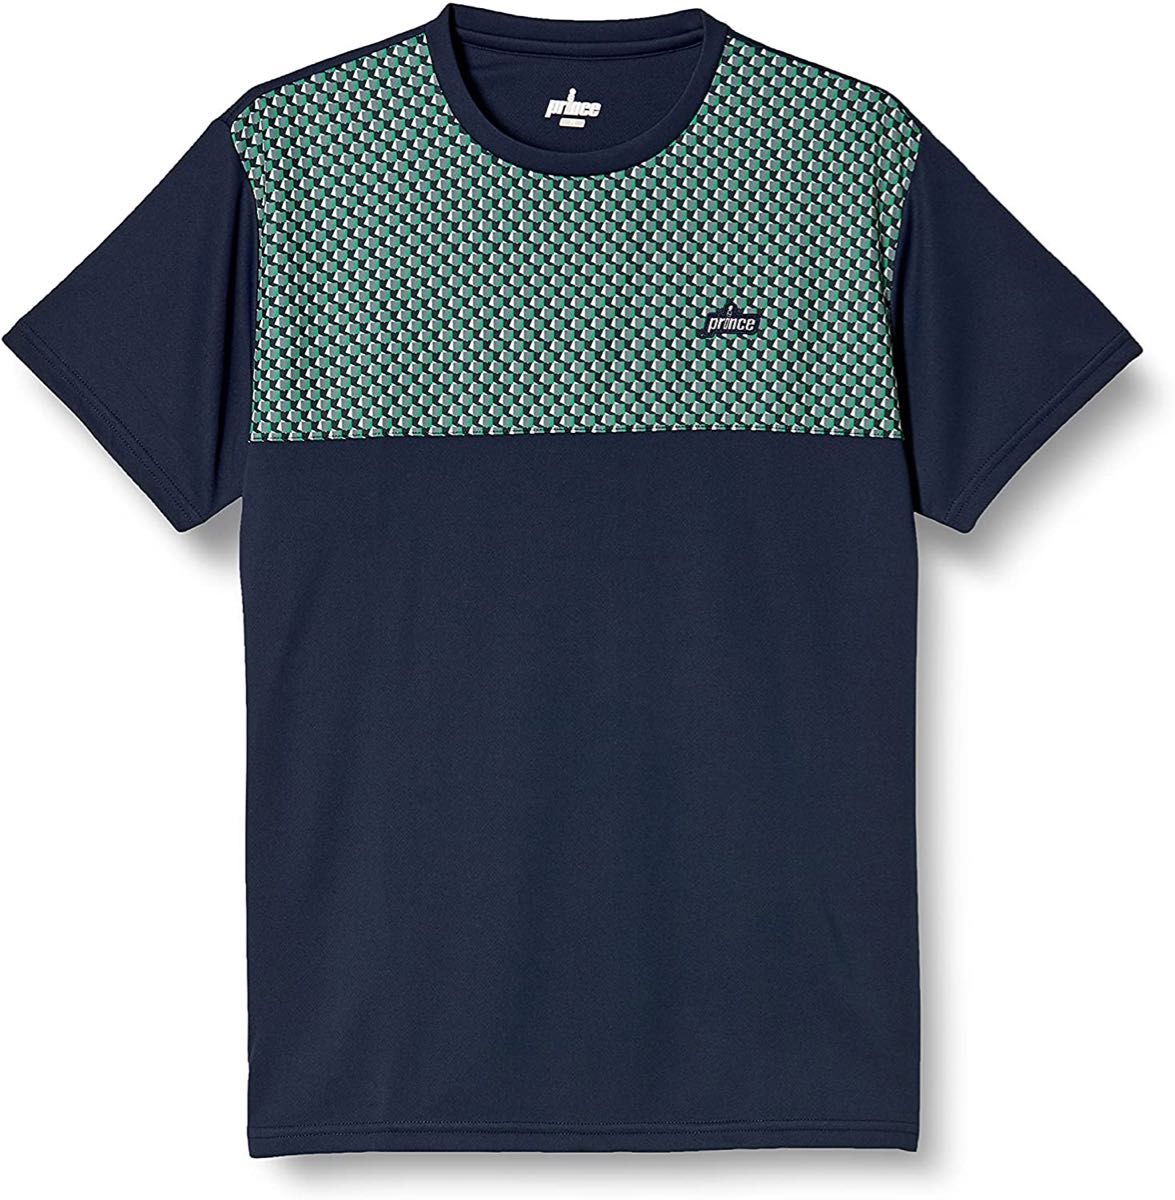 Prince プリンス テニスウェア 半袖Tシャツ テニスシャツ ゲームシャツ MF1009 ネイビー(紺) メンズM 新品